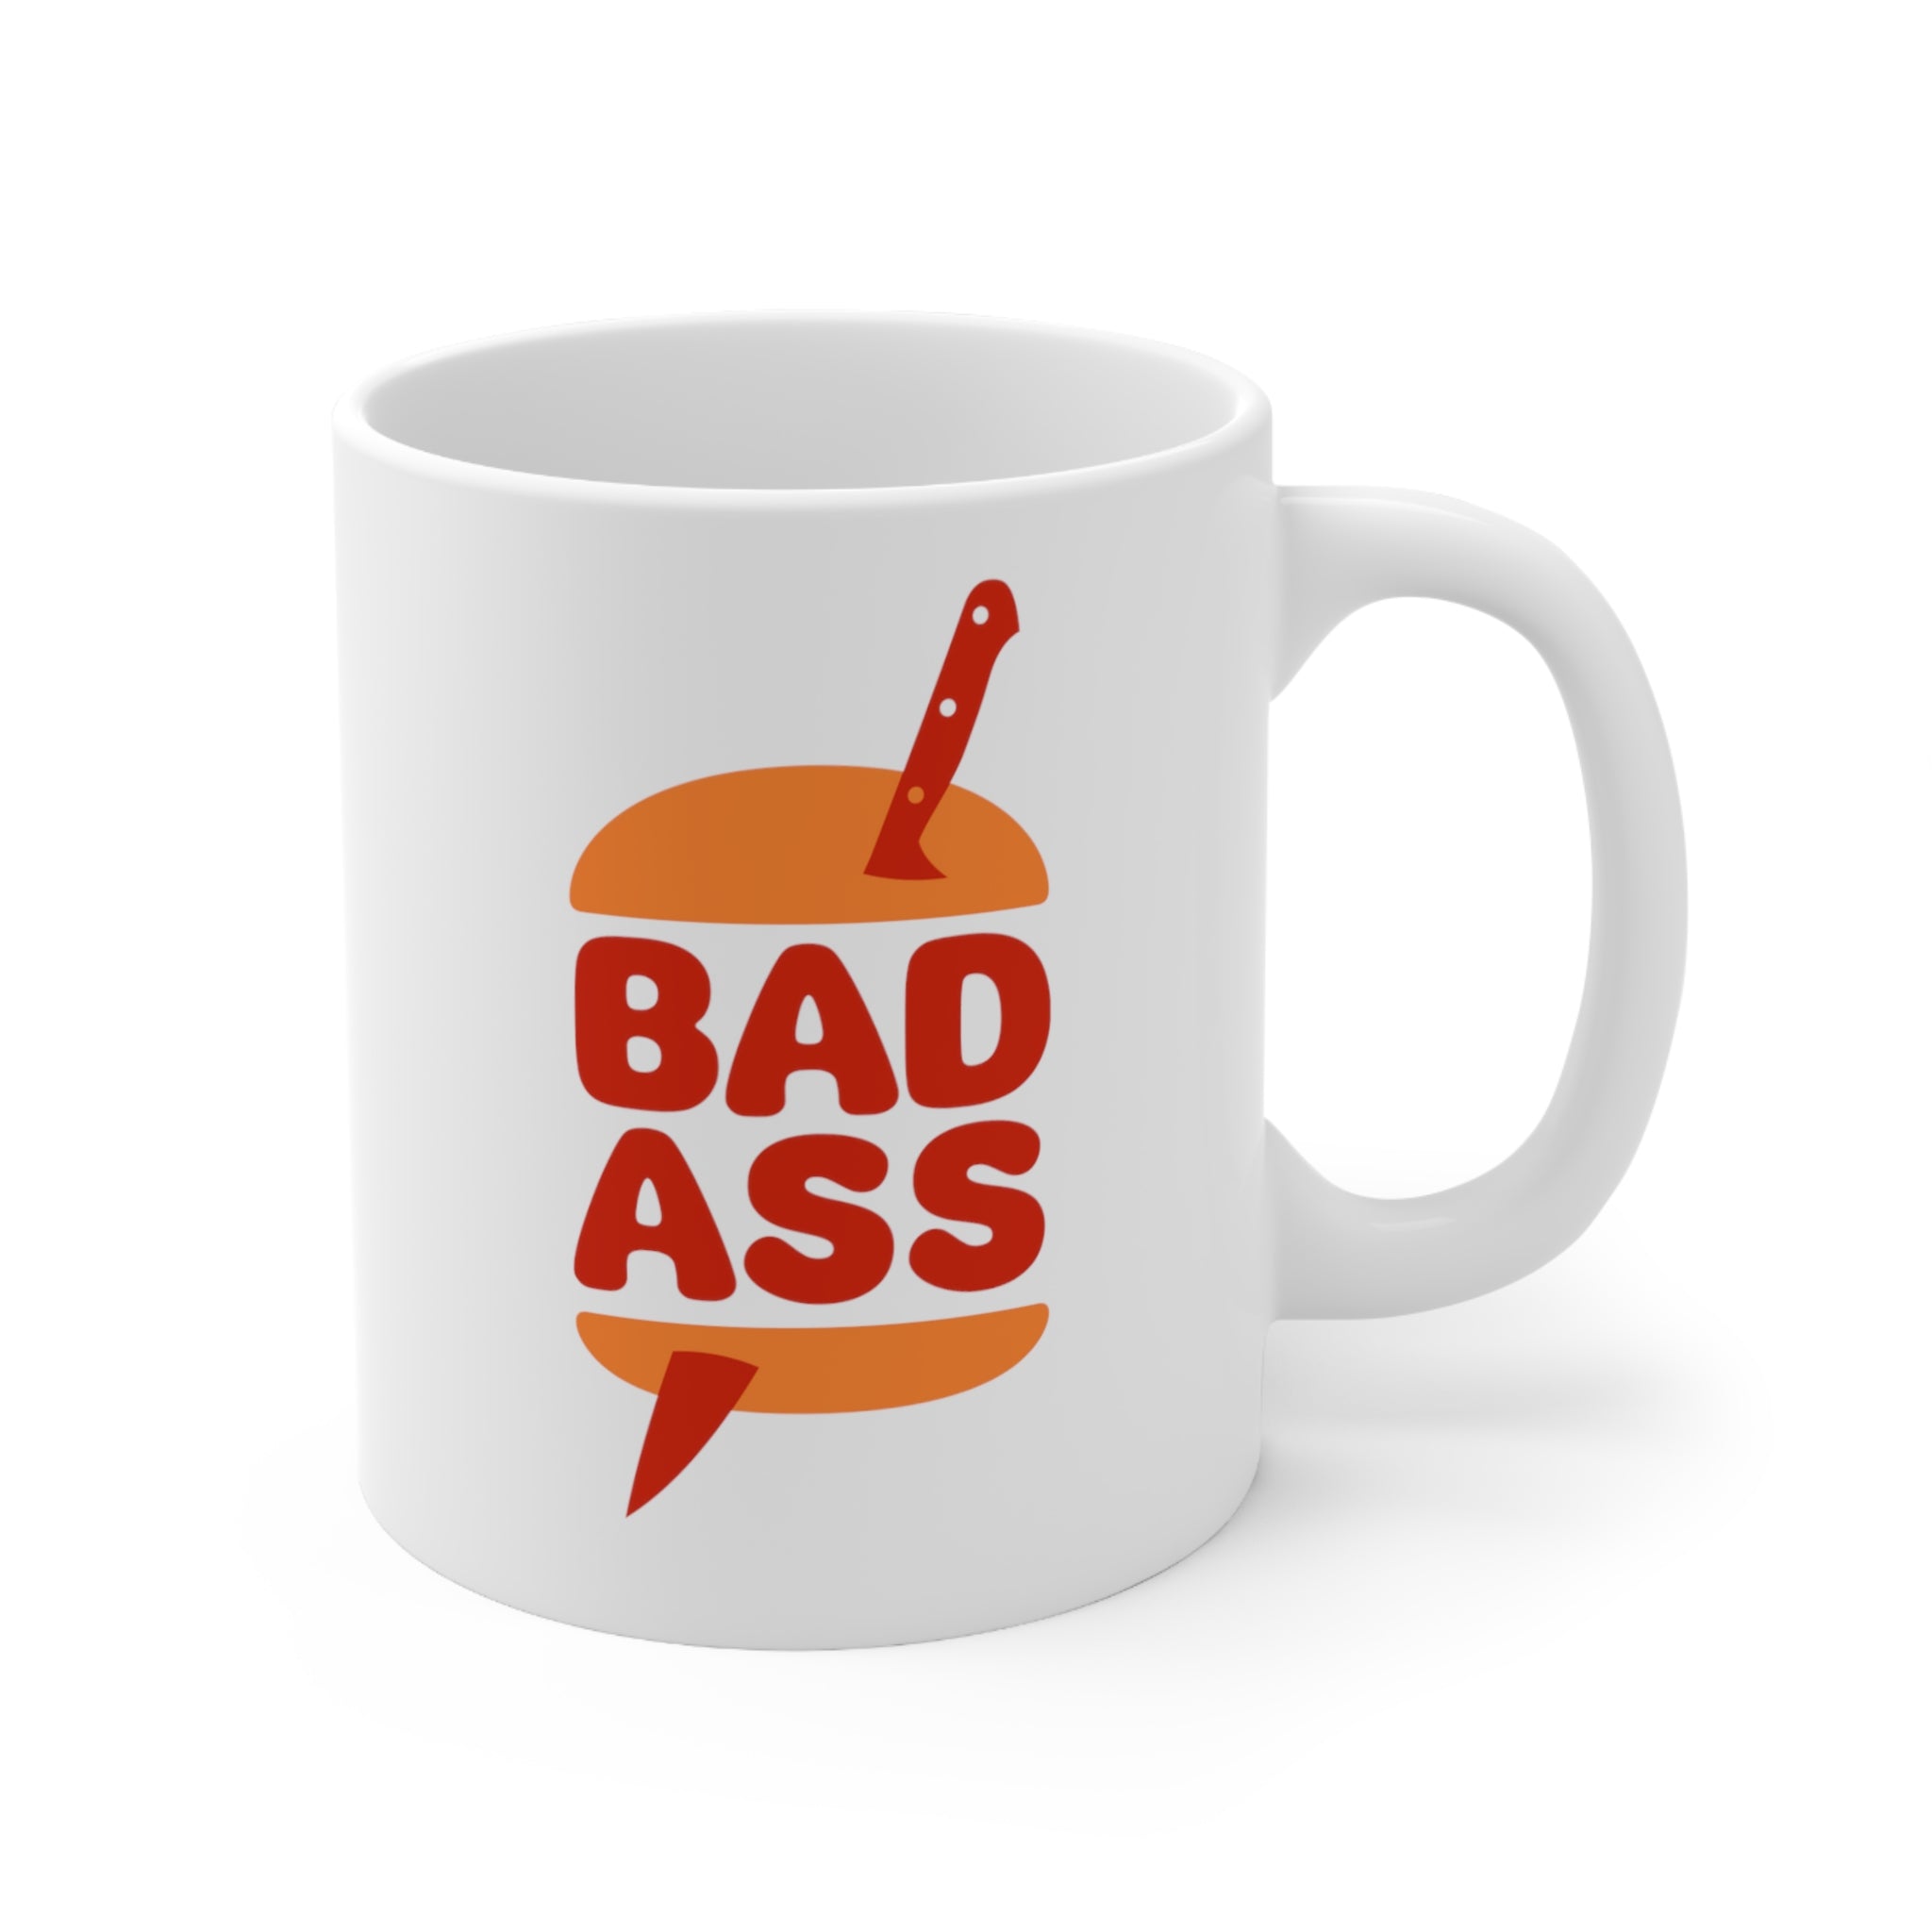 Badass Mug